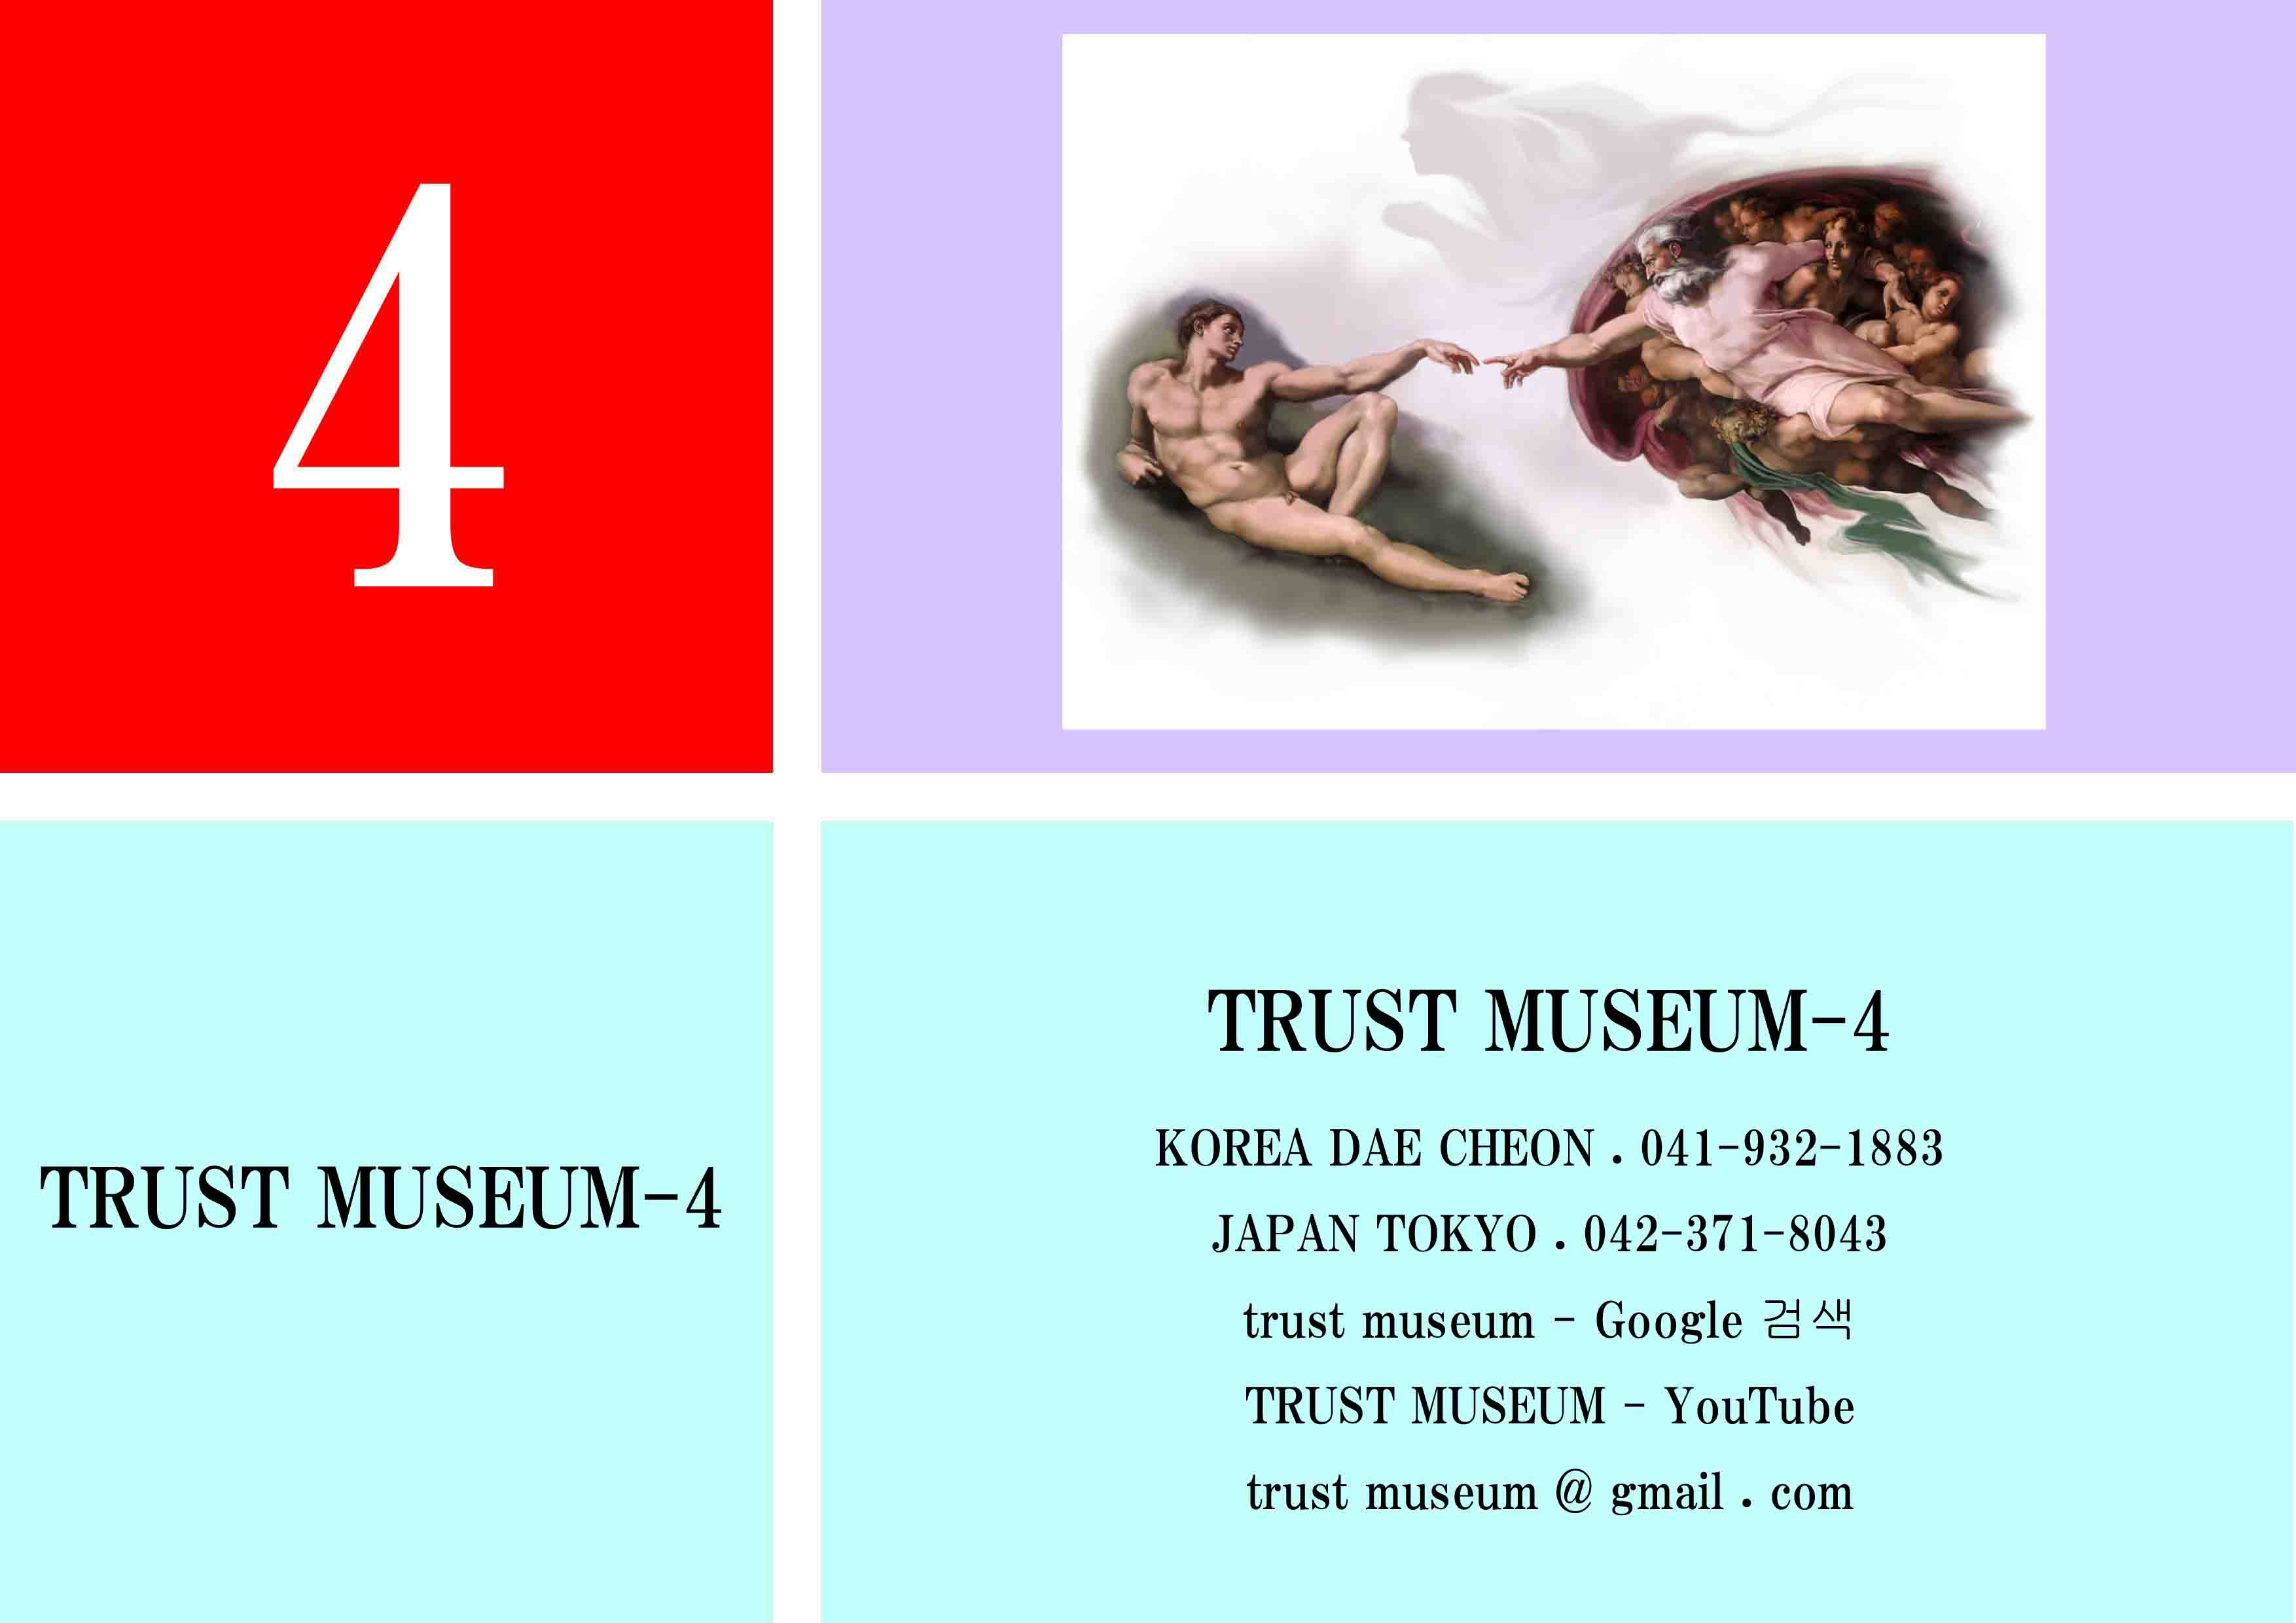 TRUST MUSEUM (4)